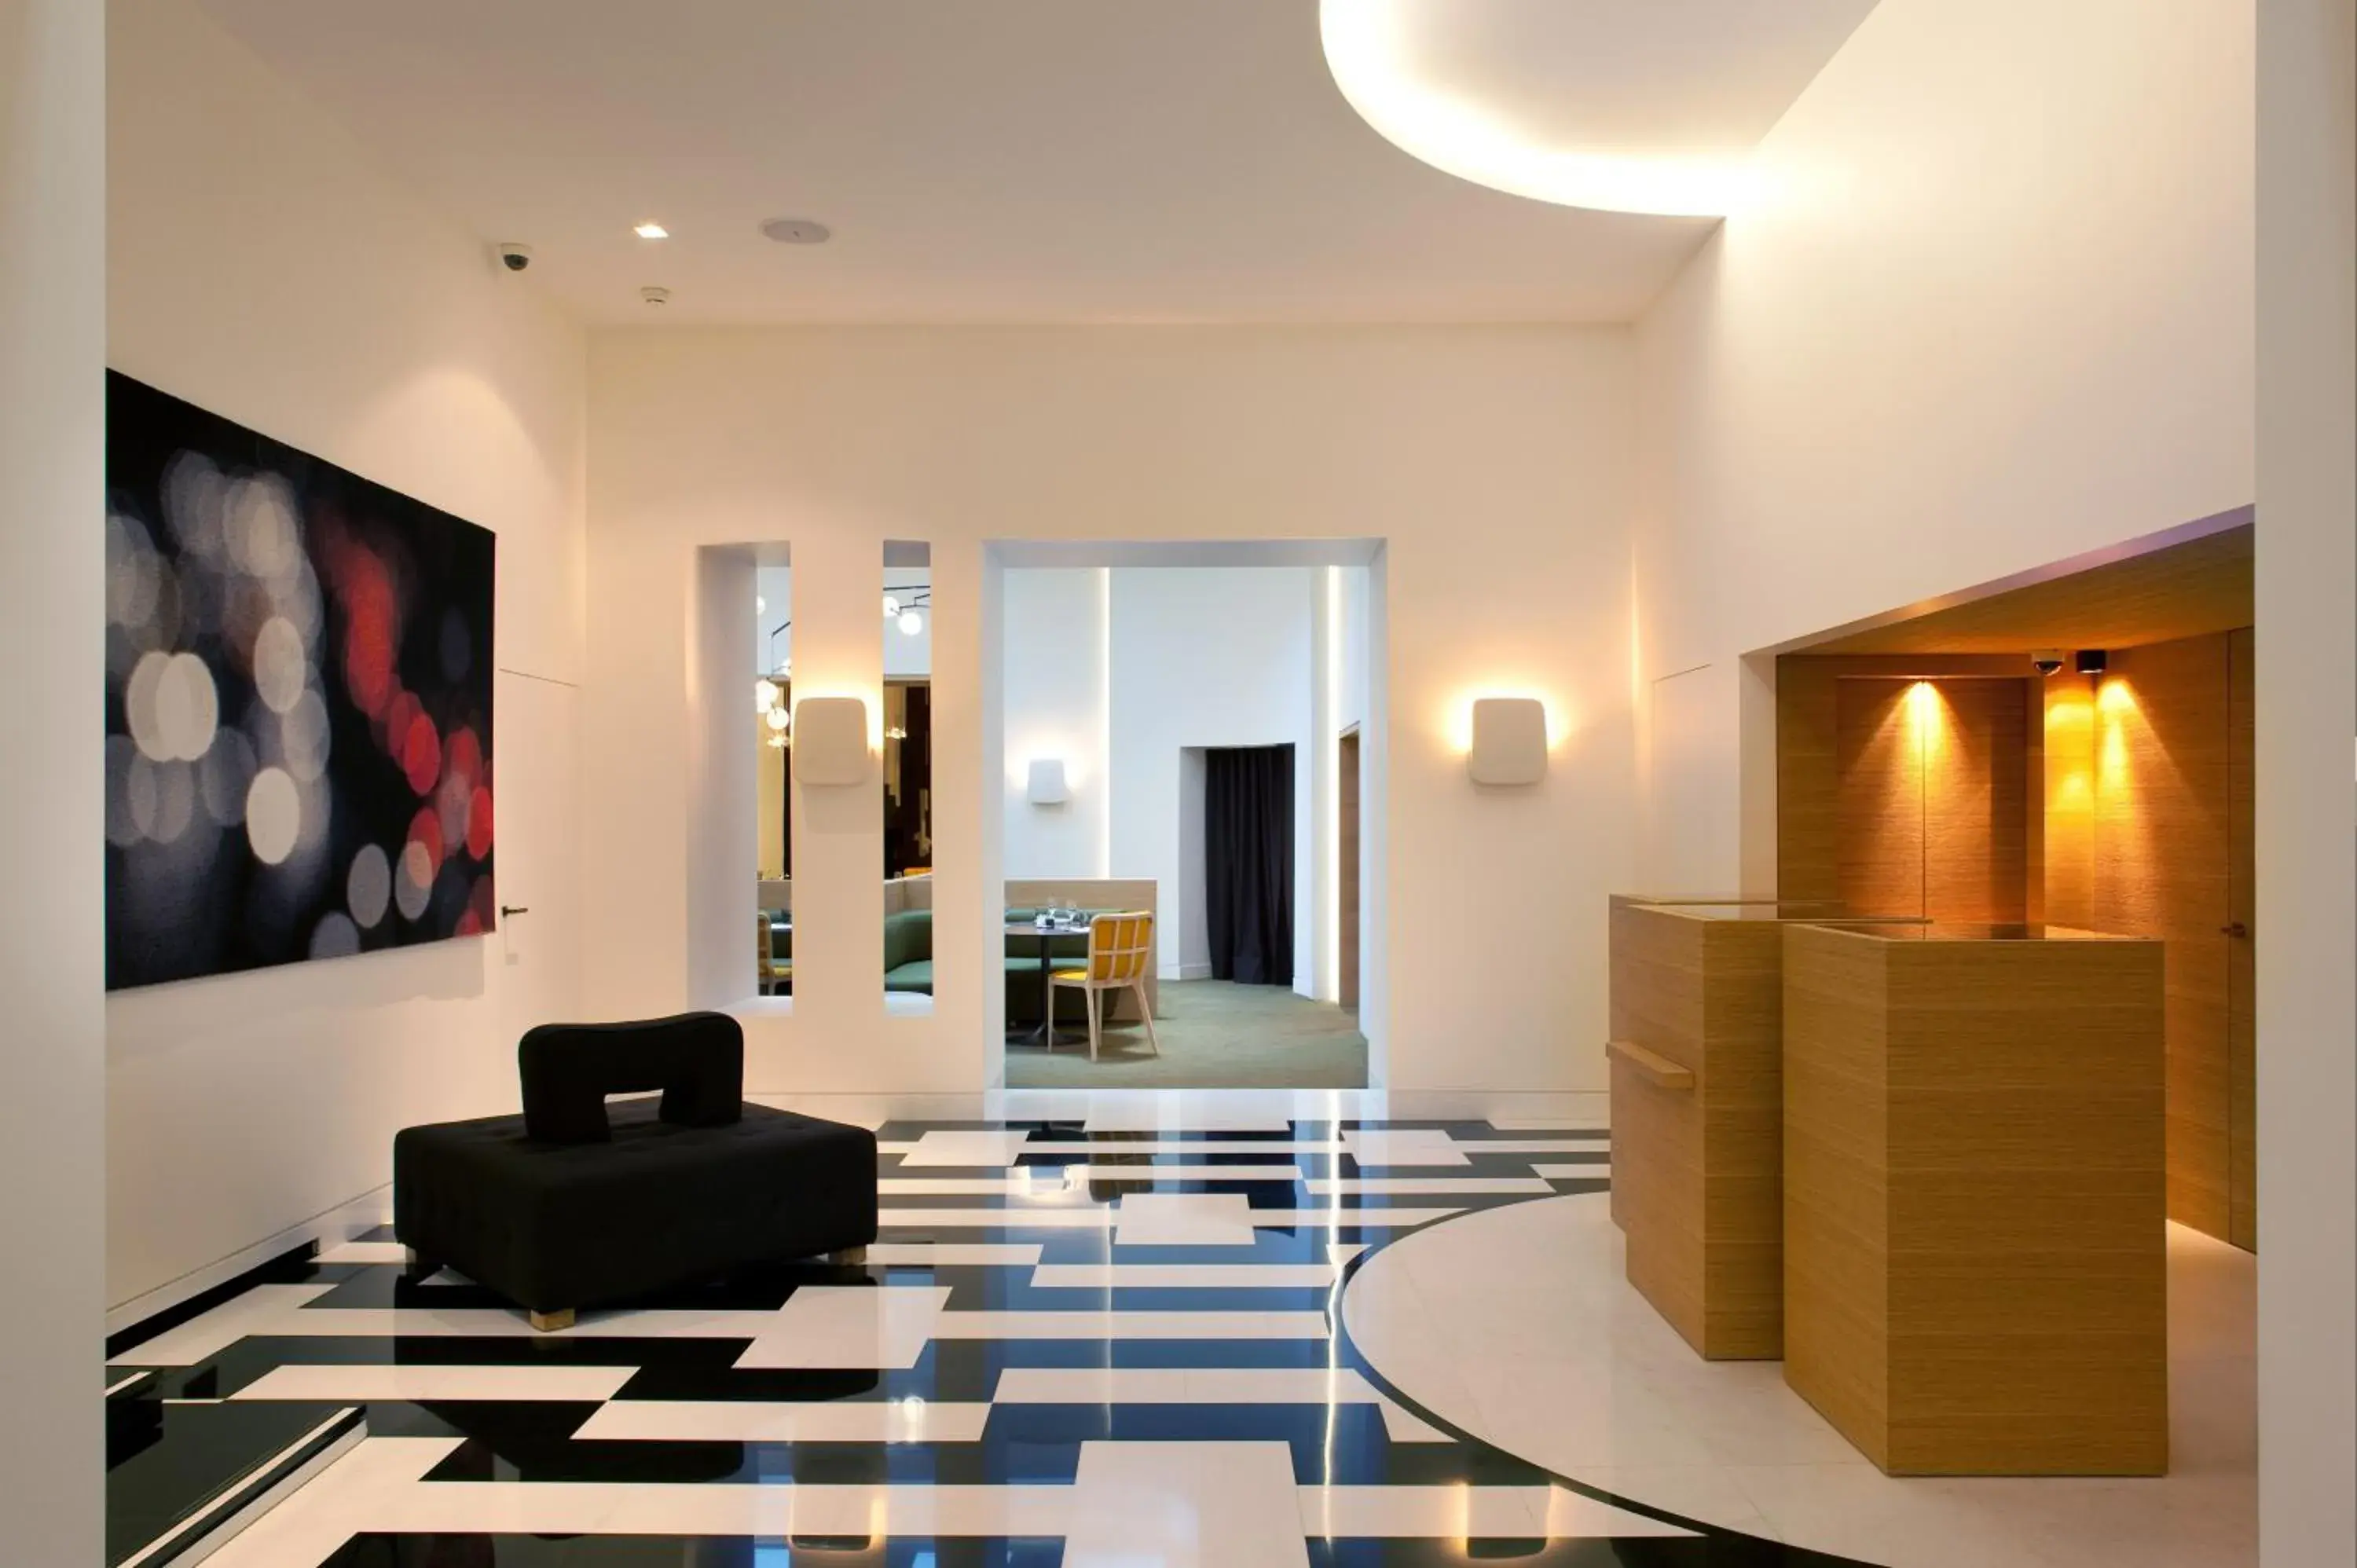 Lobby or reception, Lobby/Reception in Hotel Marignan Champs-Elysées